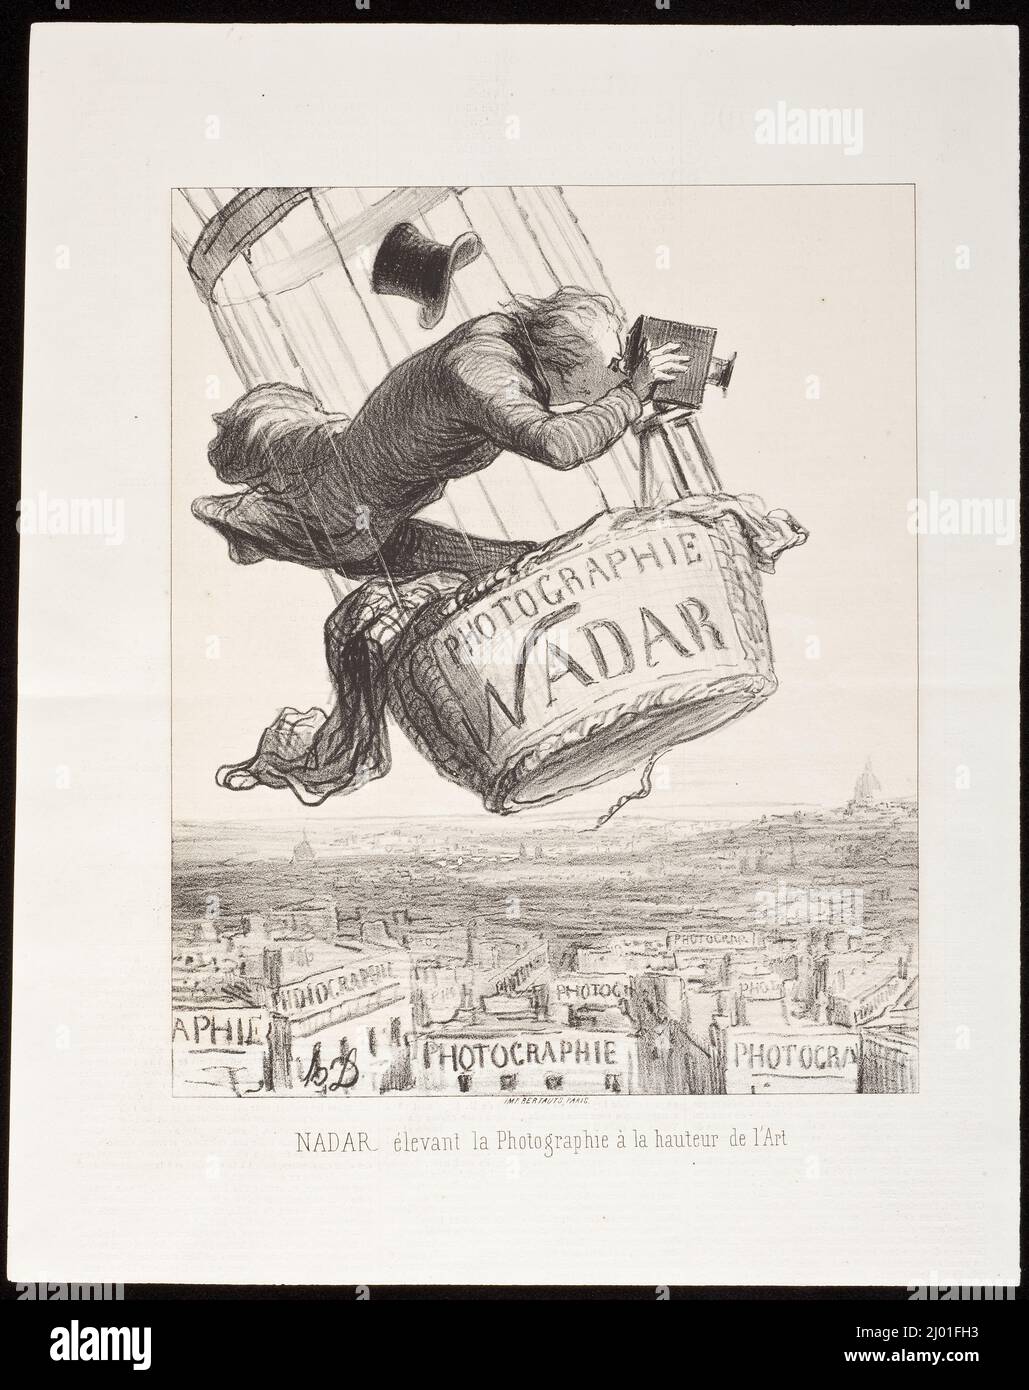 Nadar élévant la Photographie à la hauteur de l'Art. Honoré Daumier (France, Marseilles, 1808-1879). France, 1862. Prints; lithographs. Lithograph Stock Photo